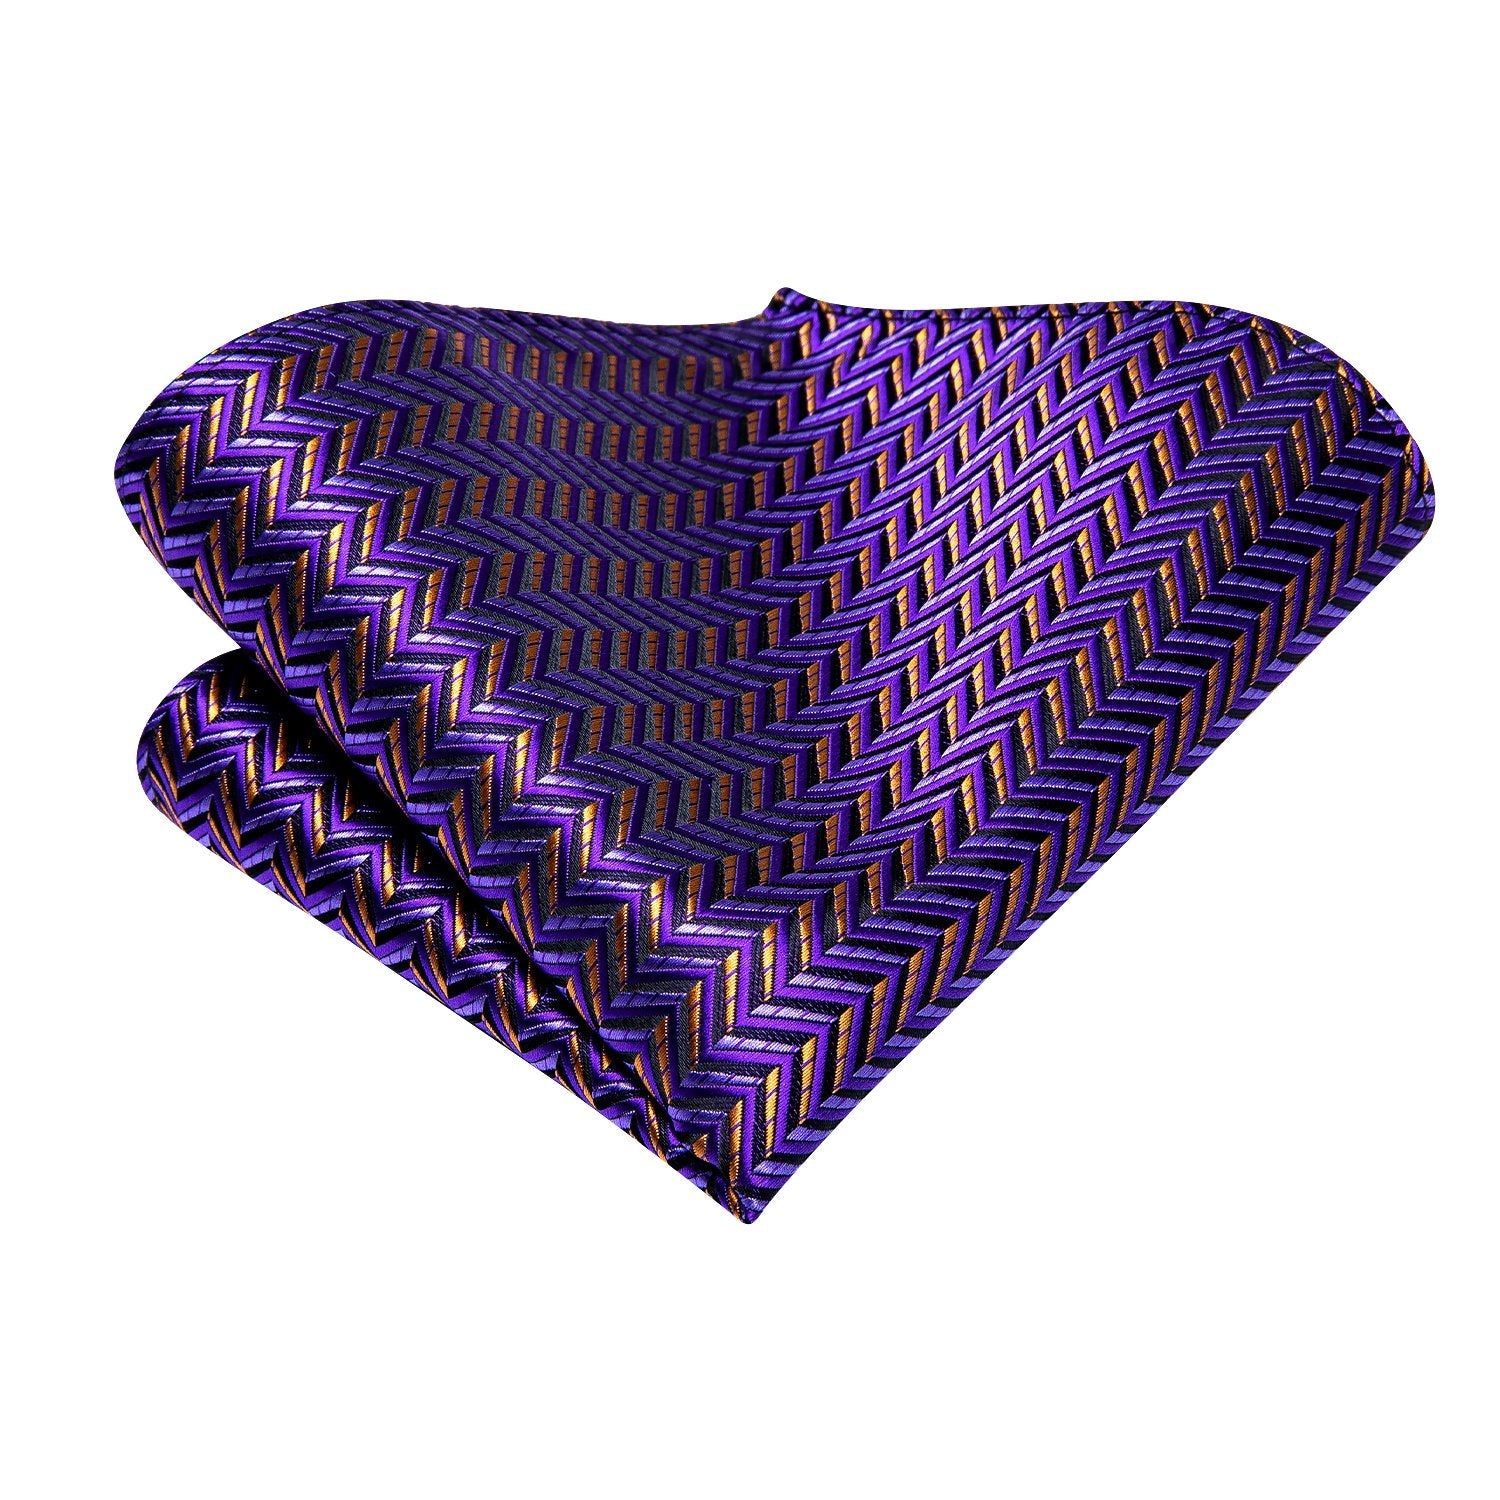 Purple Golden Striped Tie Handkerchief Cufflinks Set with Wedding Brooch